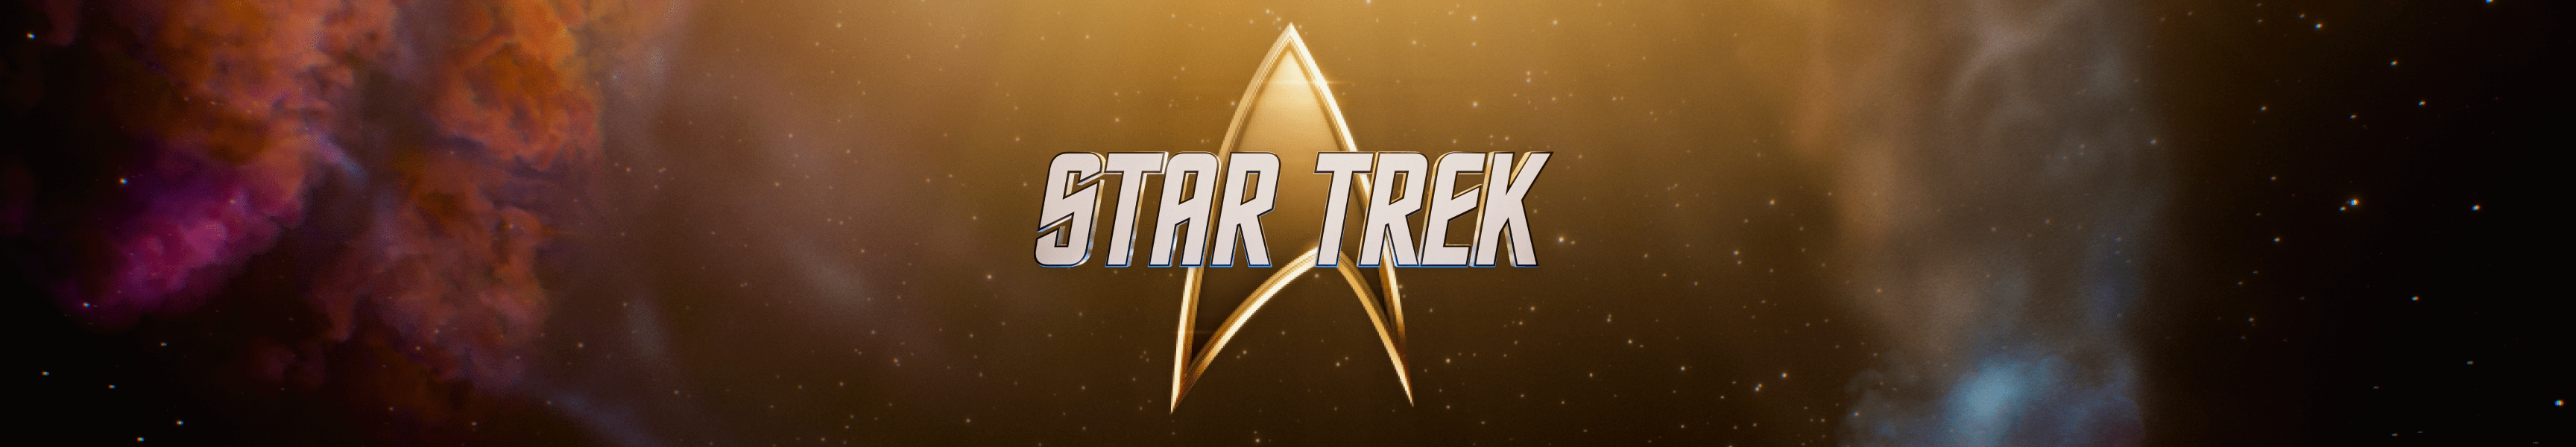 Star Trek 55. Jahrestag